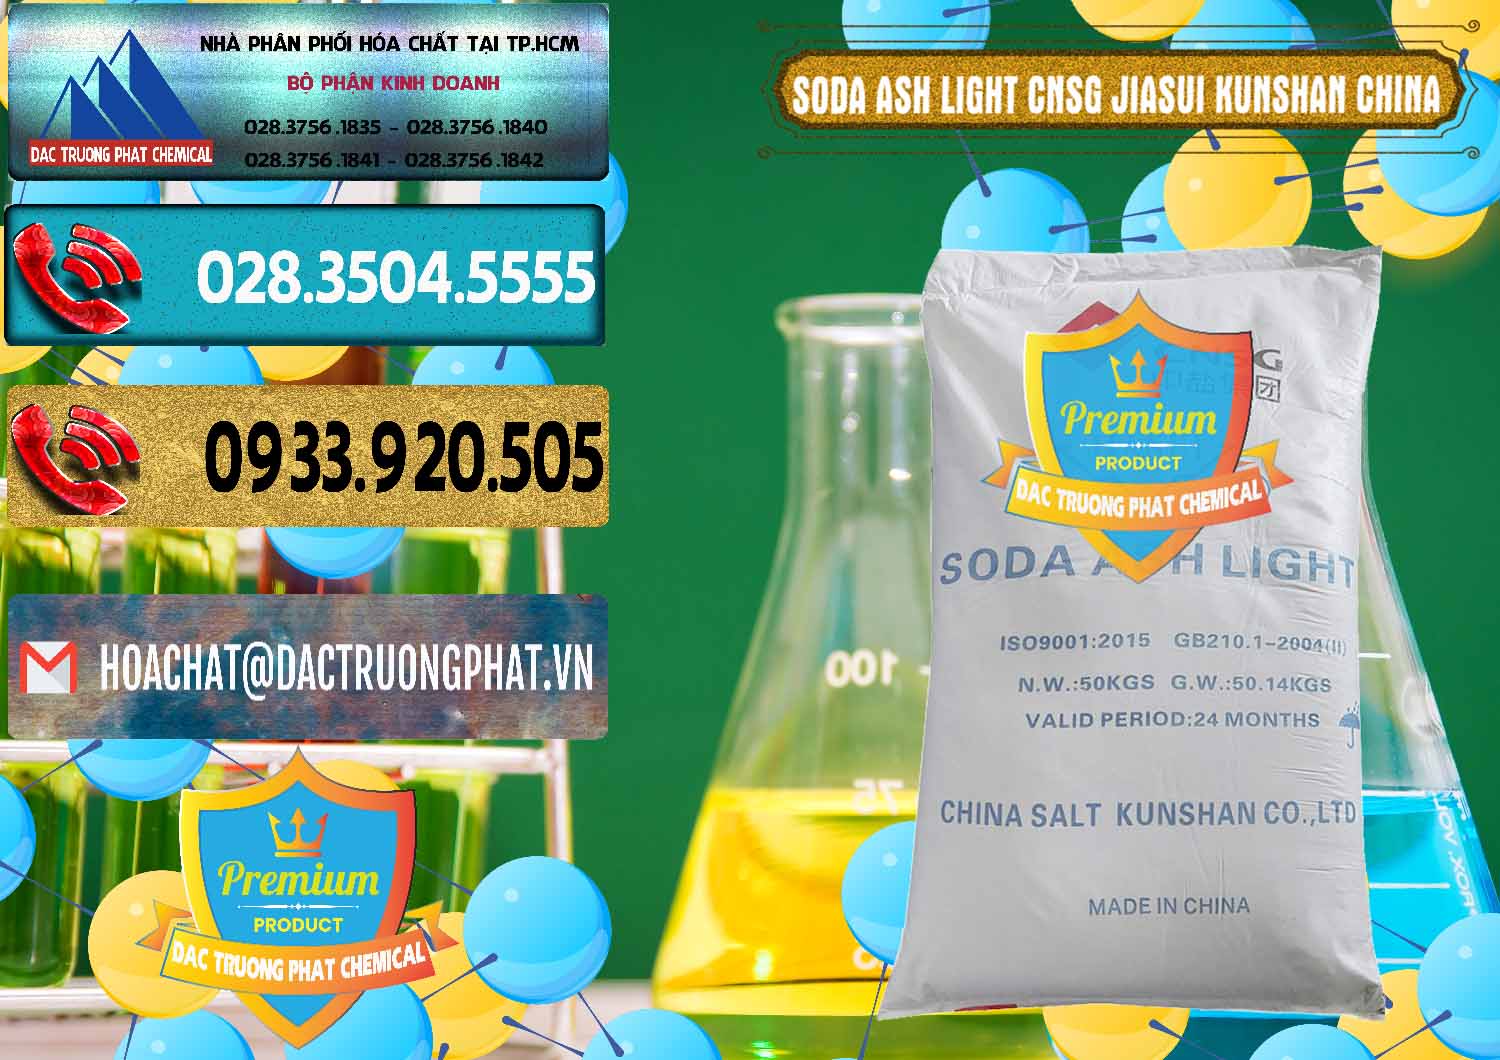 Nhà cung cấp & bán Soda Ash Light - NA2CO3 99.2% CNSG Jiasui Kunshan Trung Quốc China - 0252 - Nơi chuyên cung cấp ( bán ) hóa chất tại TP.HCM - hoachatdetnhuom.com